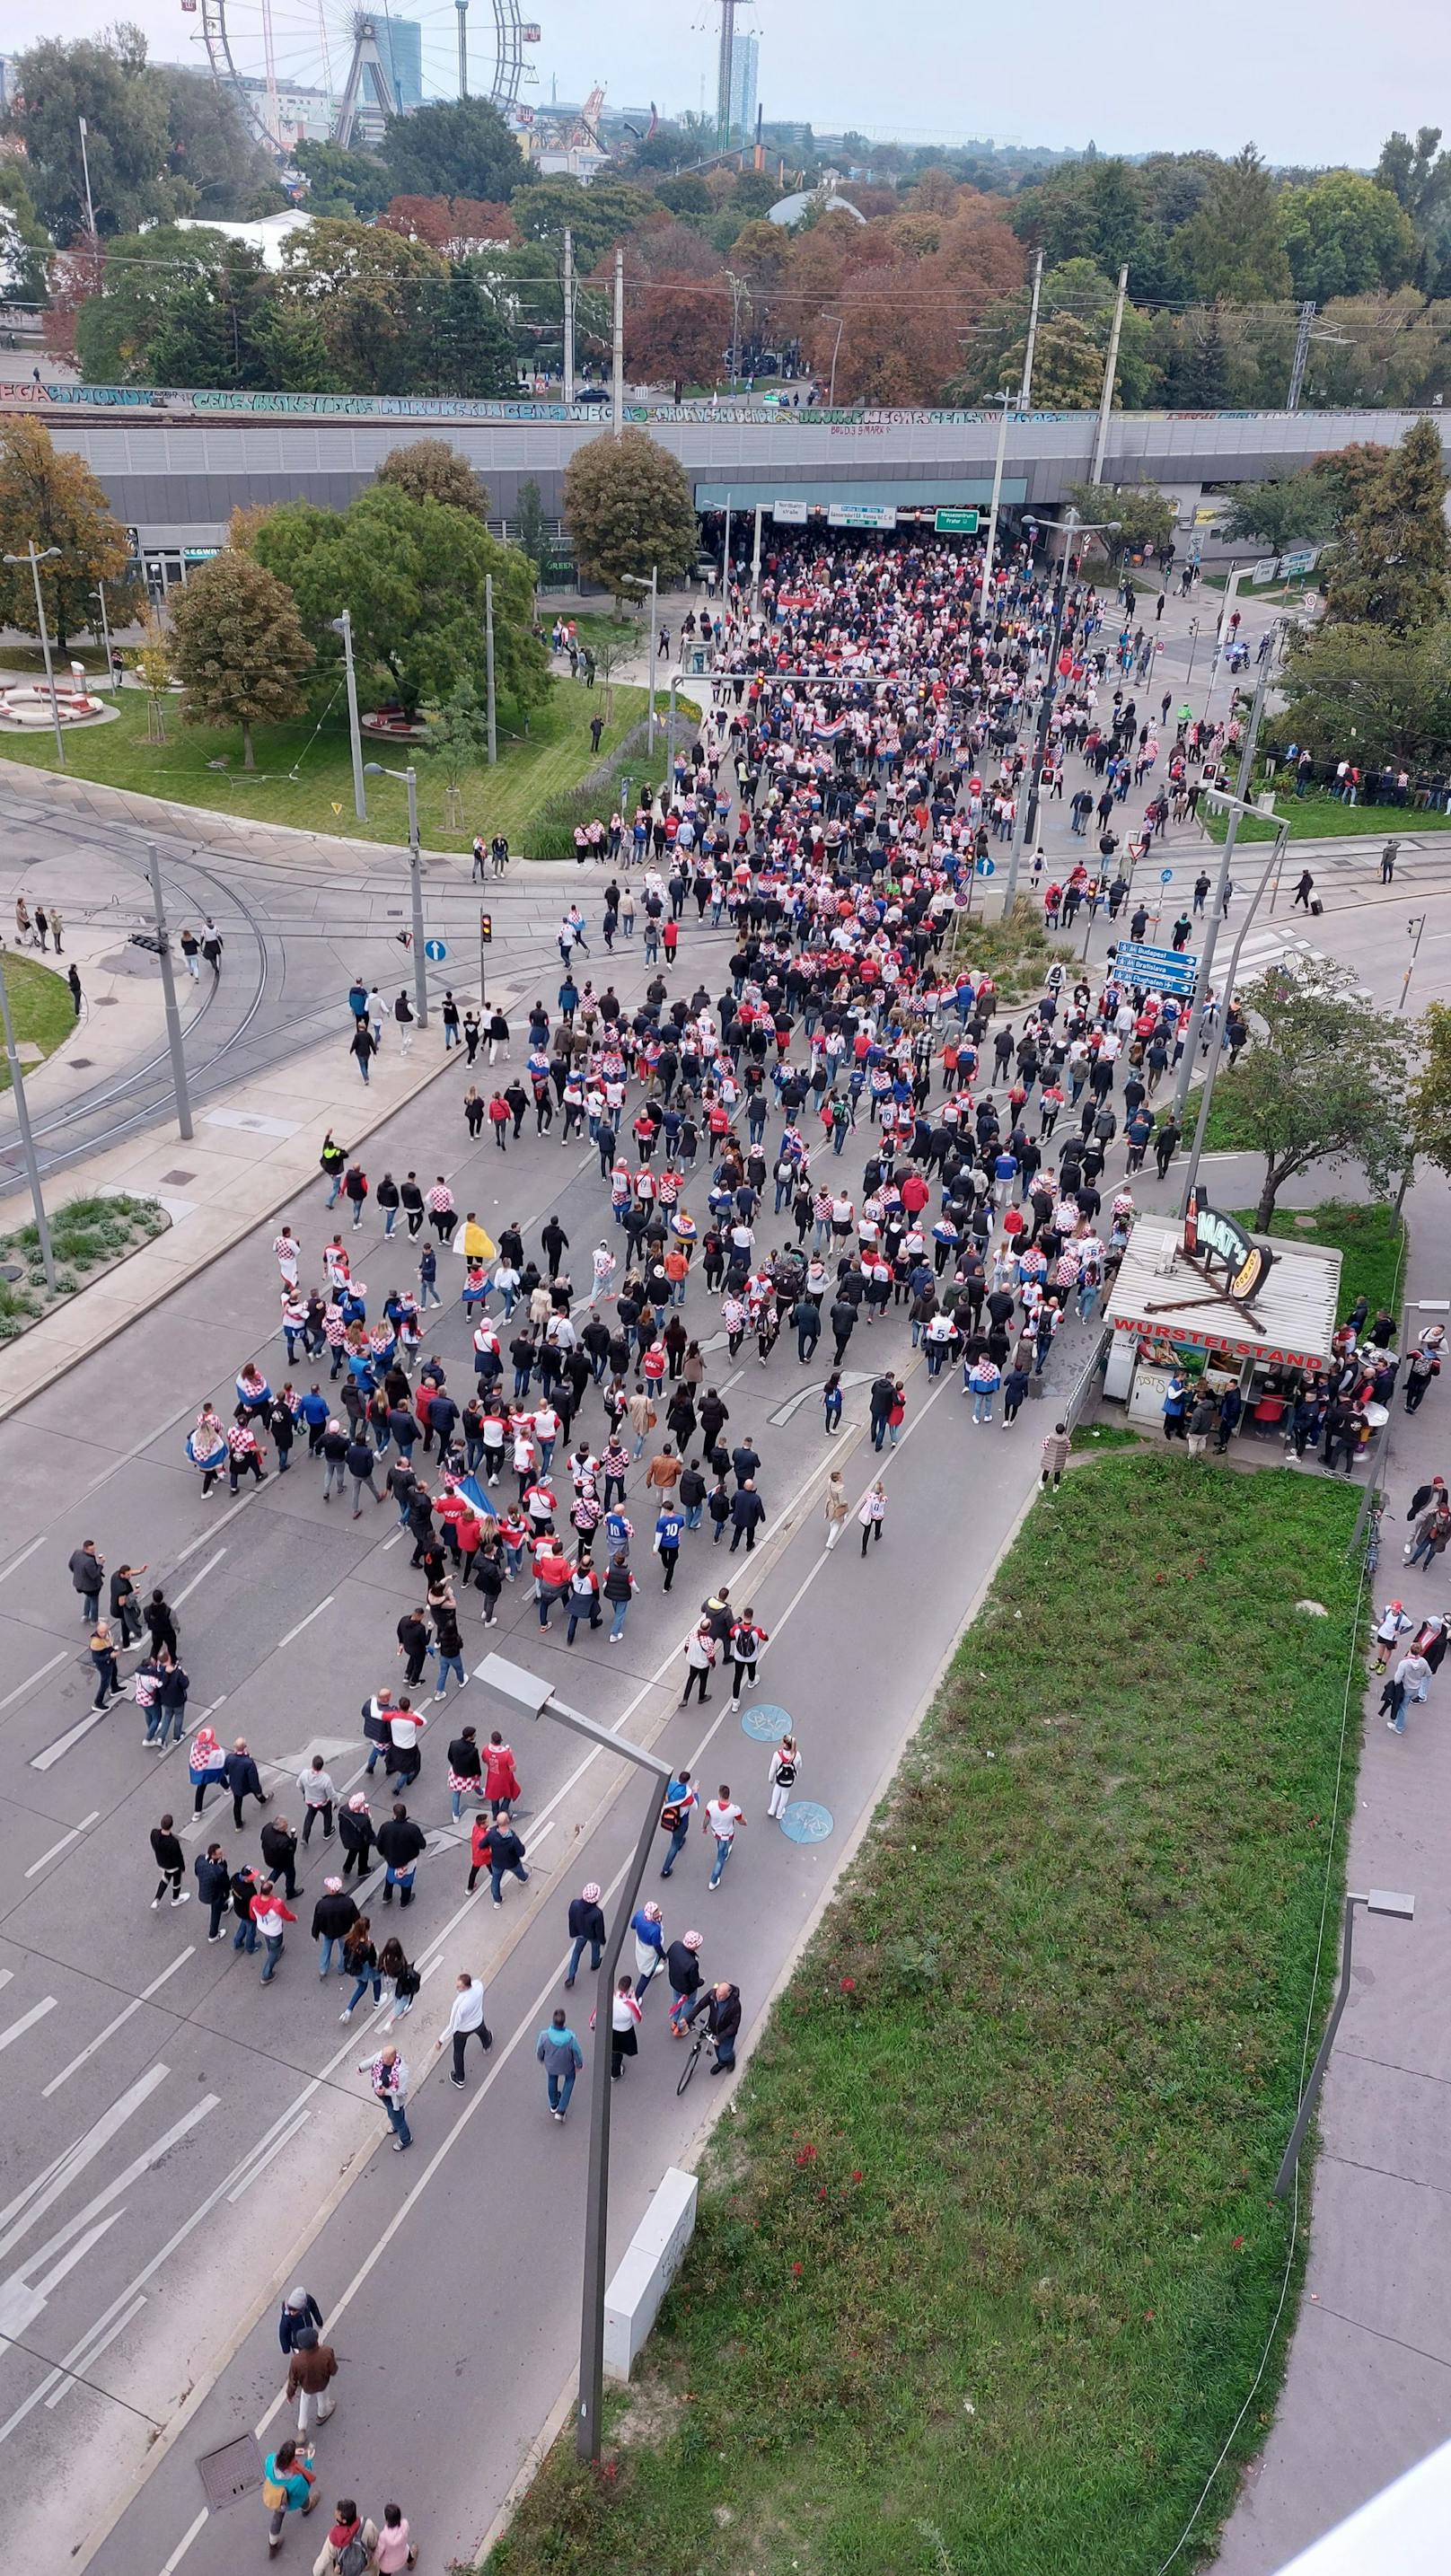 Die kroatischen Fans machen sich nun zu Fuß auf den Weg ins Stadion.